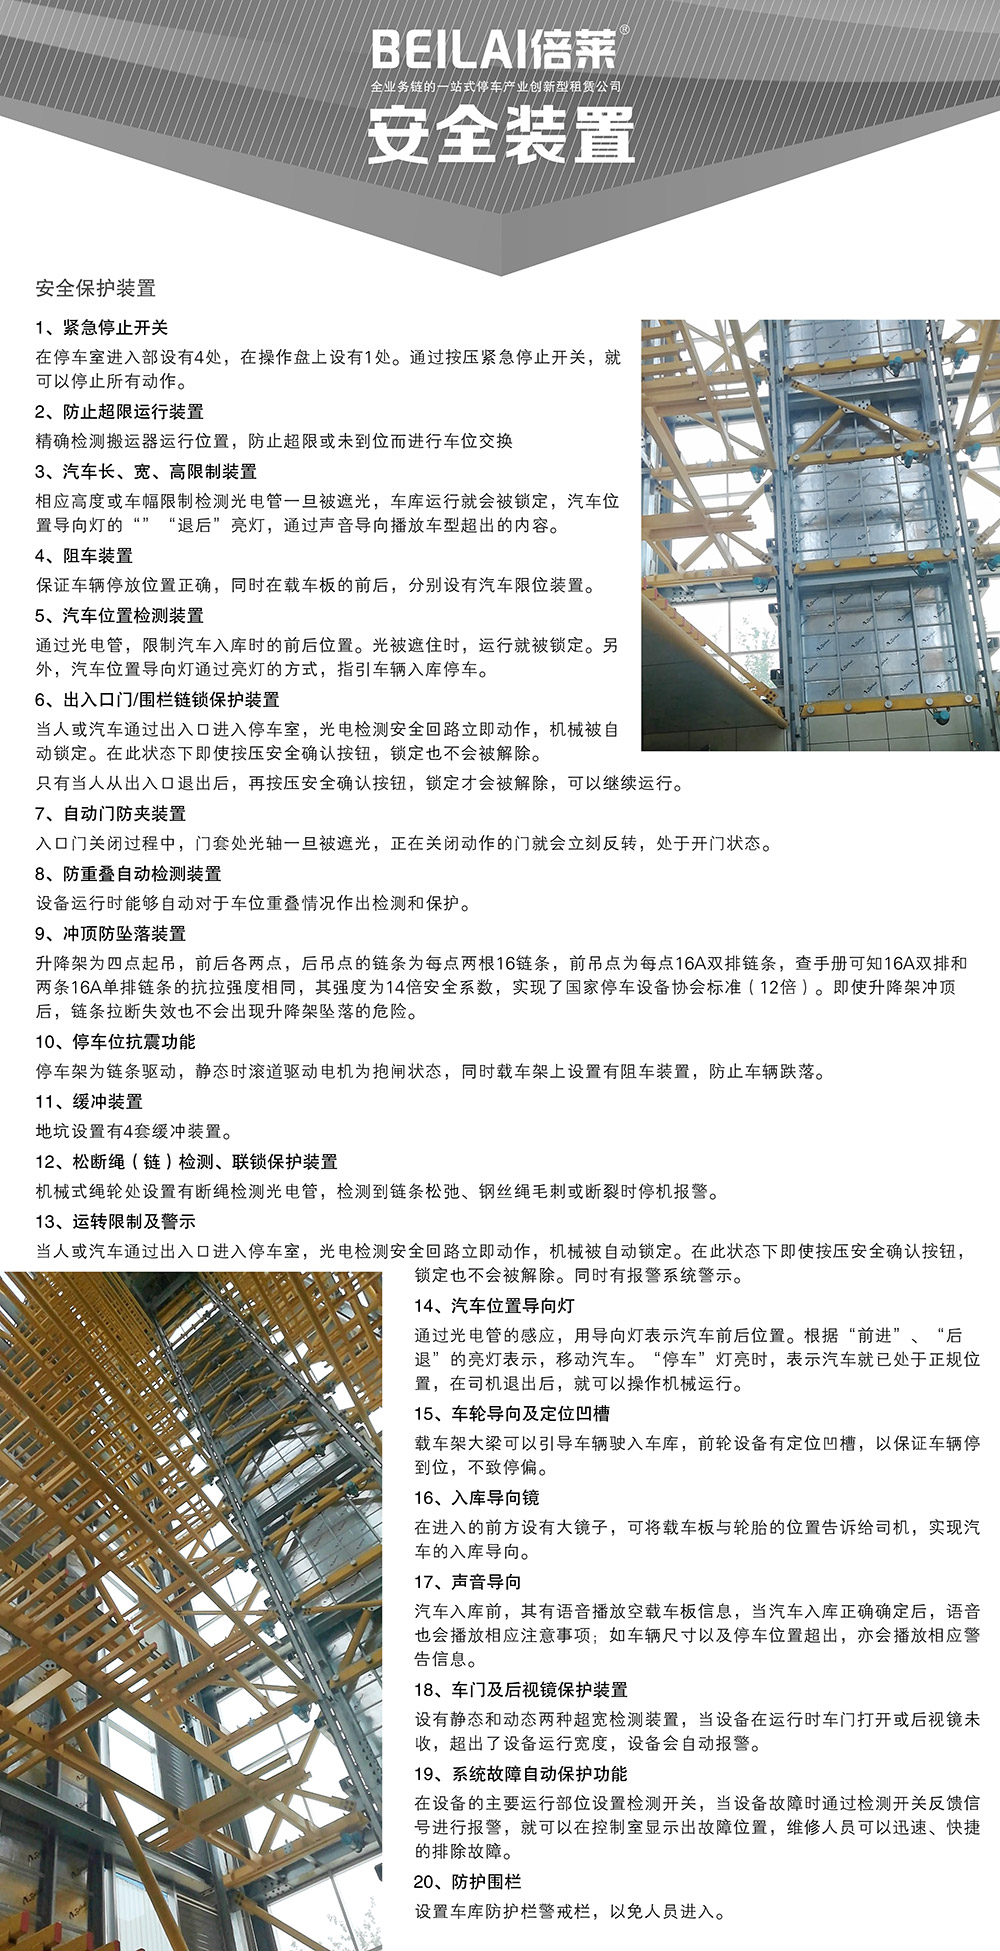 重庆垂直升降立体停车设备安全装置.jpg